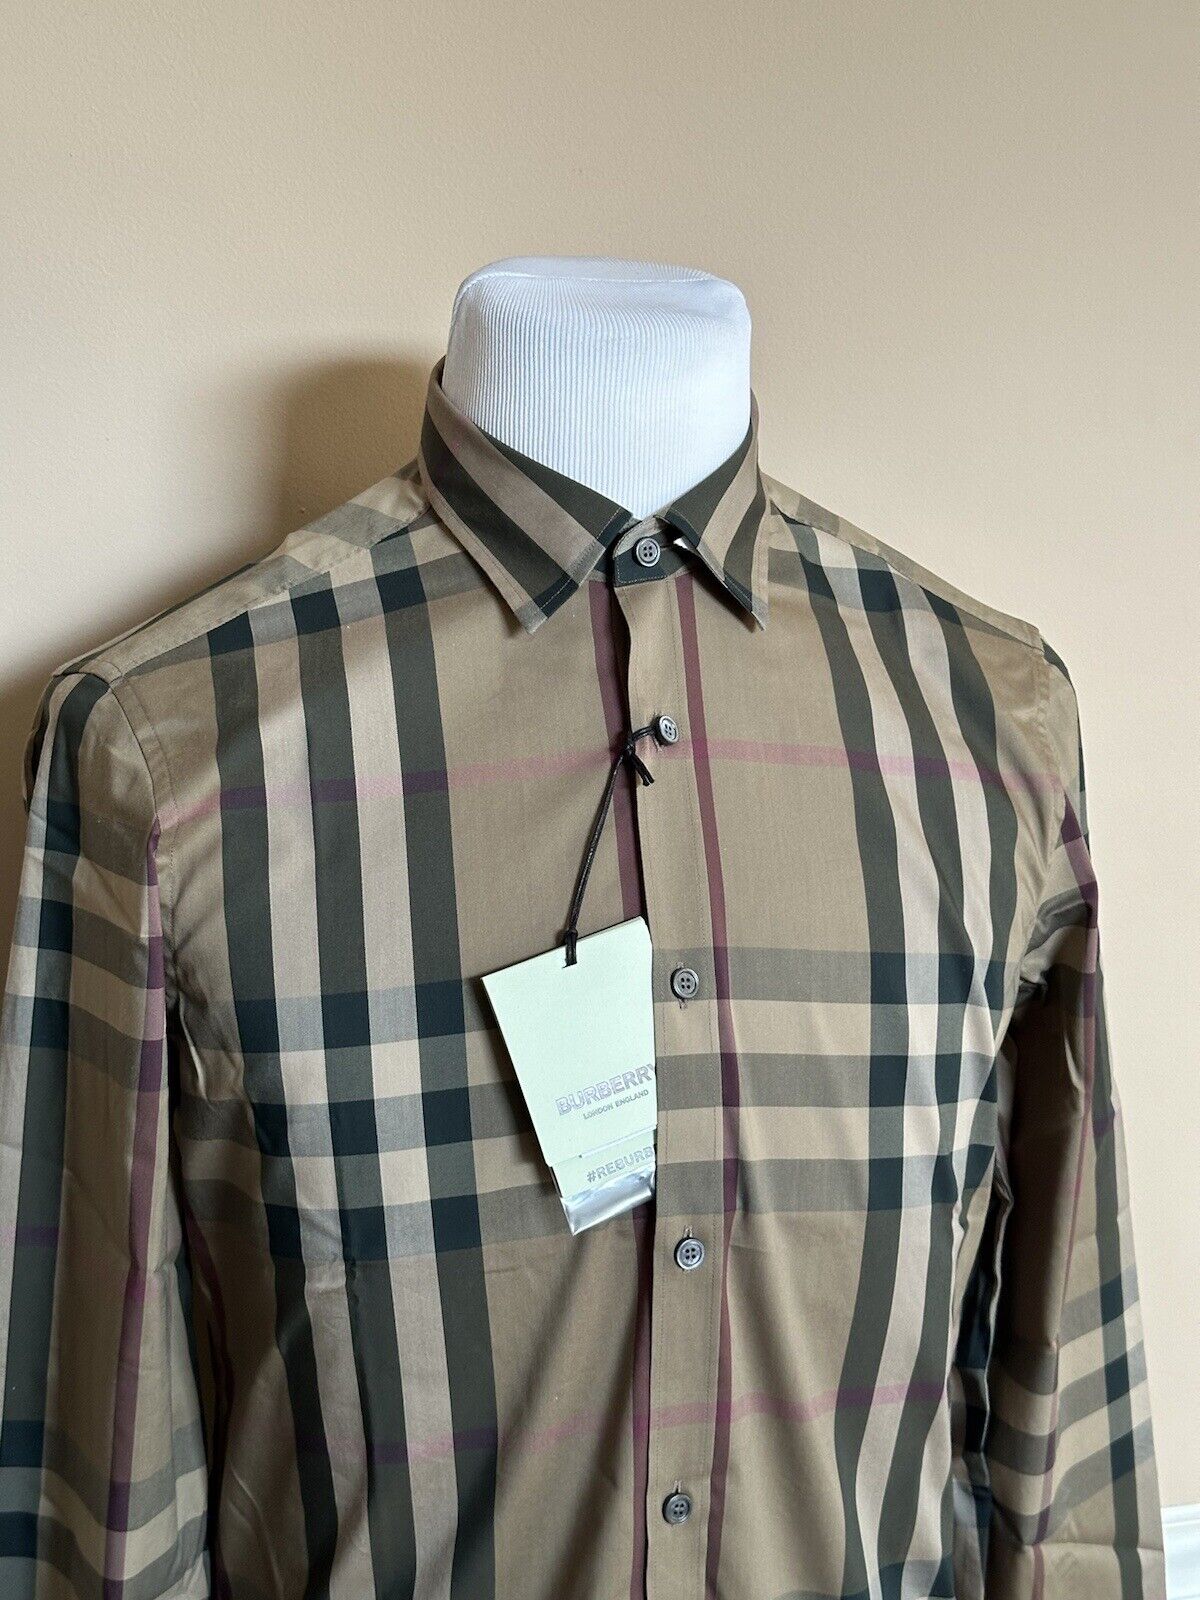 NWT $570 Burberry Men's Nelson Pebble Cotton Button-up Shirt M 8073400